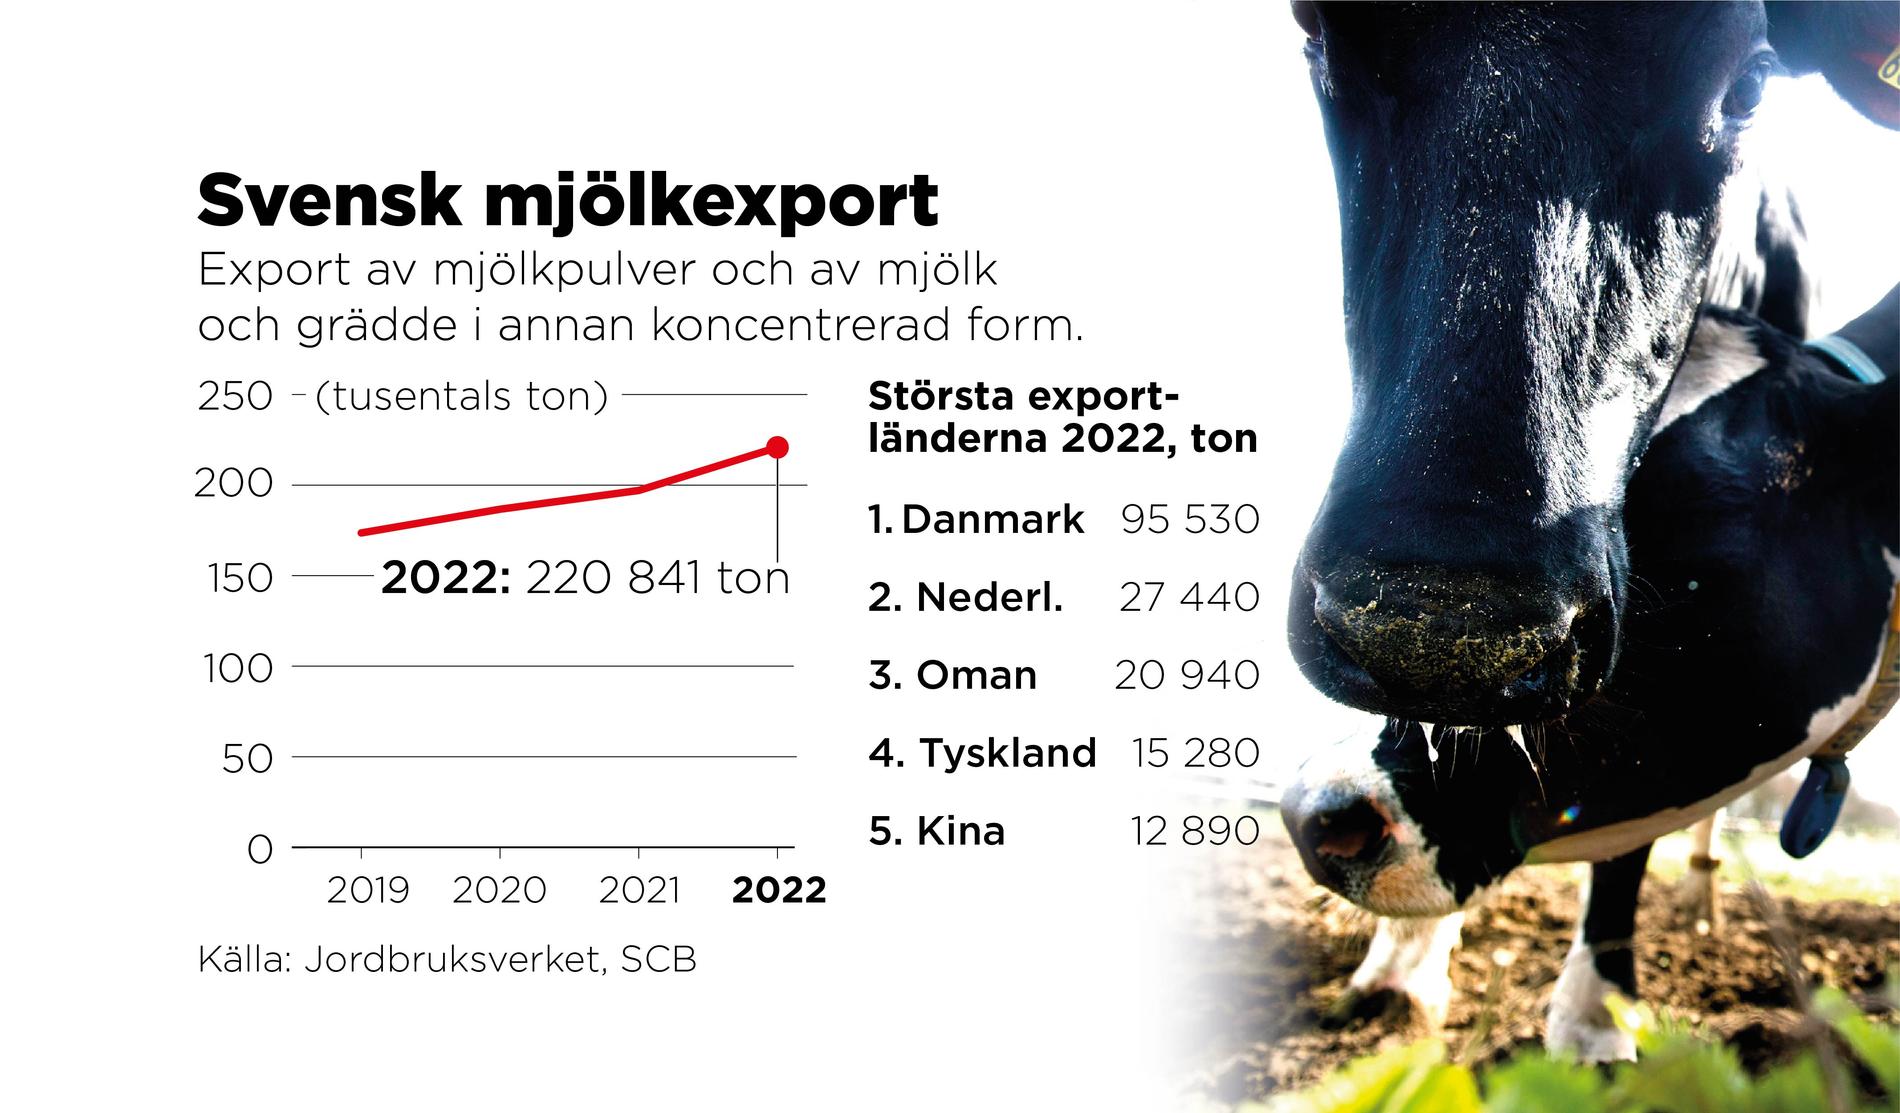 Export av mjölkpulver och av mjölk och grädde i annan koncentrerad form ökar. I takt med att svenska konsumenter i hög grad väljer importerad ost, blir pulverexporten desto viktigare för mejerier och lantbrukare.